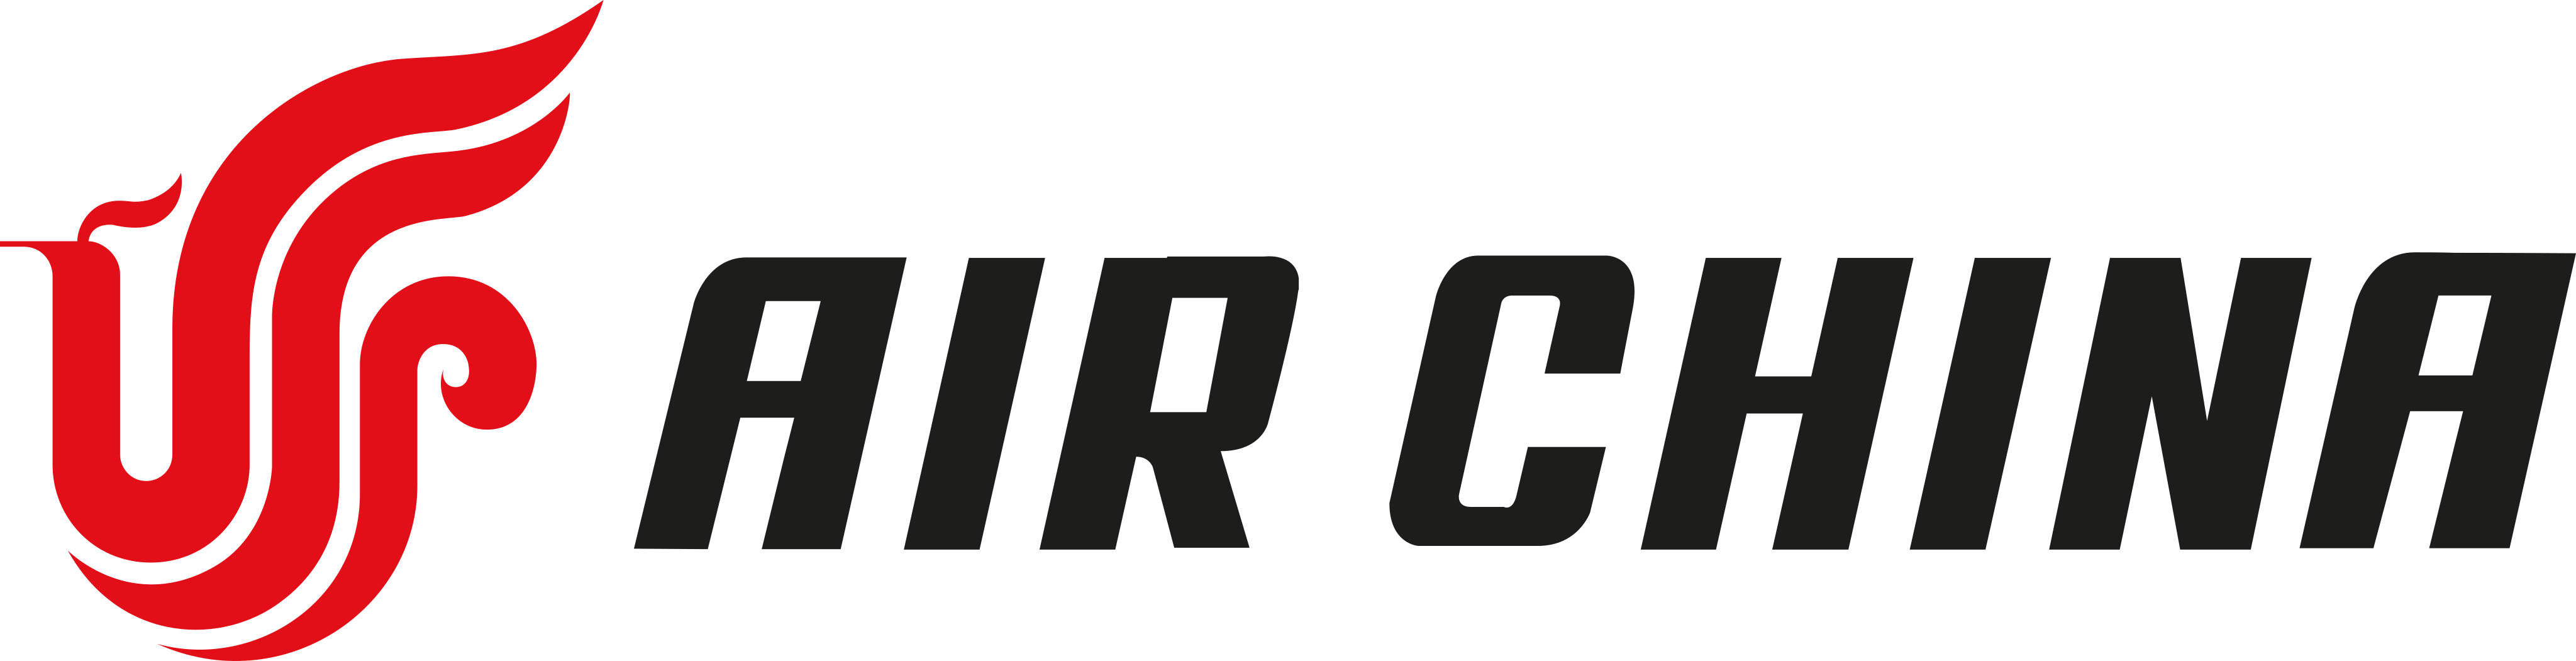 air china logo - Air China Logo